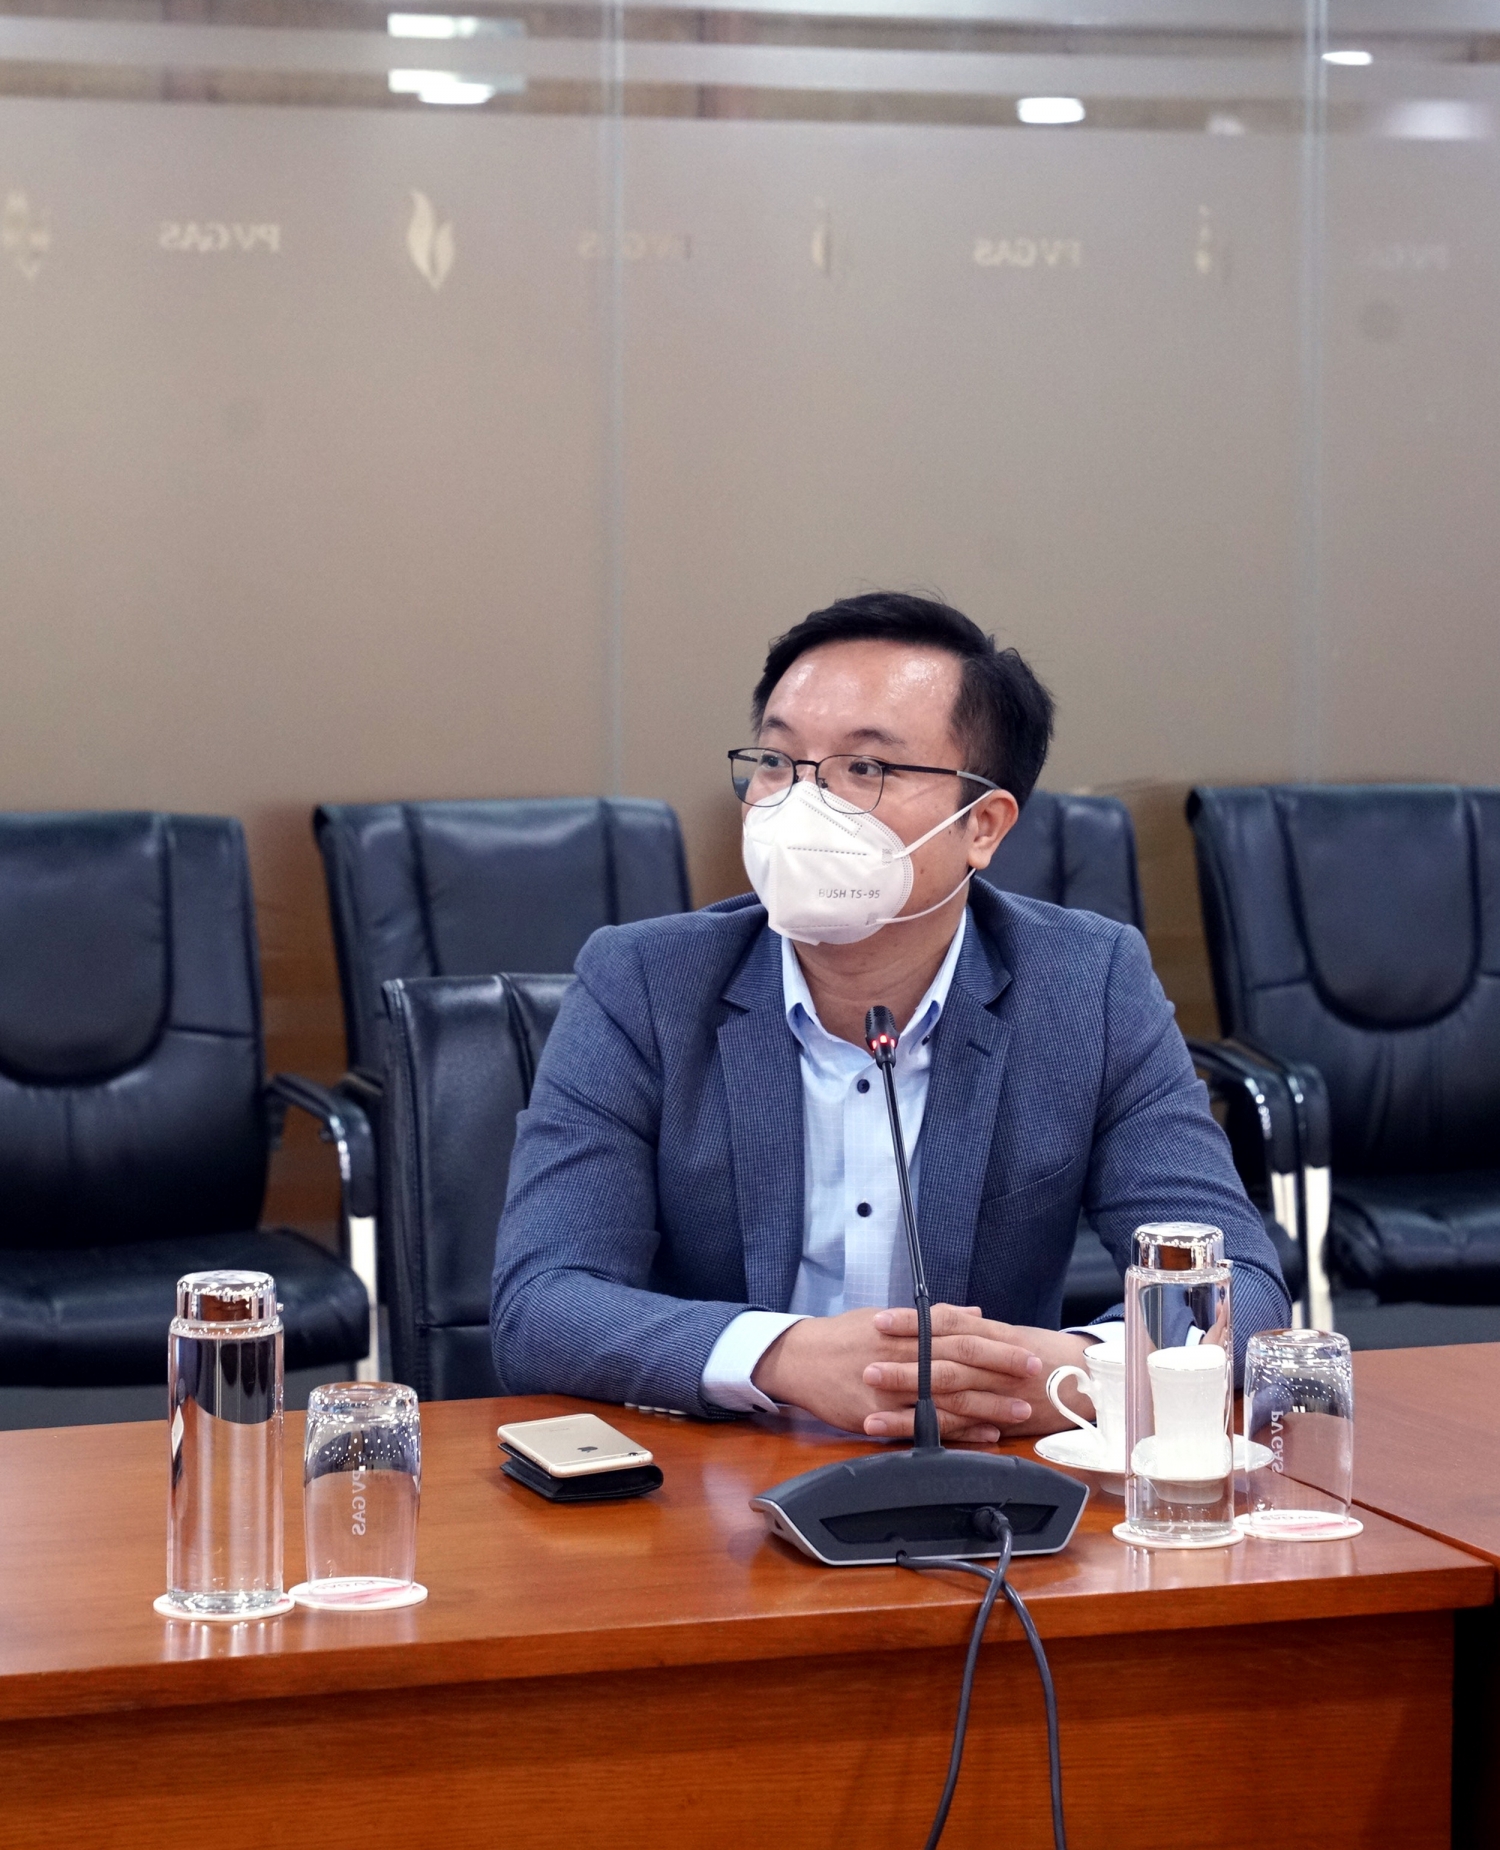 Ông Phó Đức Giang – Giám đốc PwC Cyber Việt Nam cùng các chuyên gia trao đổi, thảo luận những thông tin liên quan tại Hội nghị